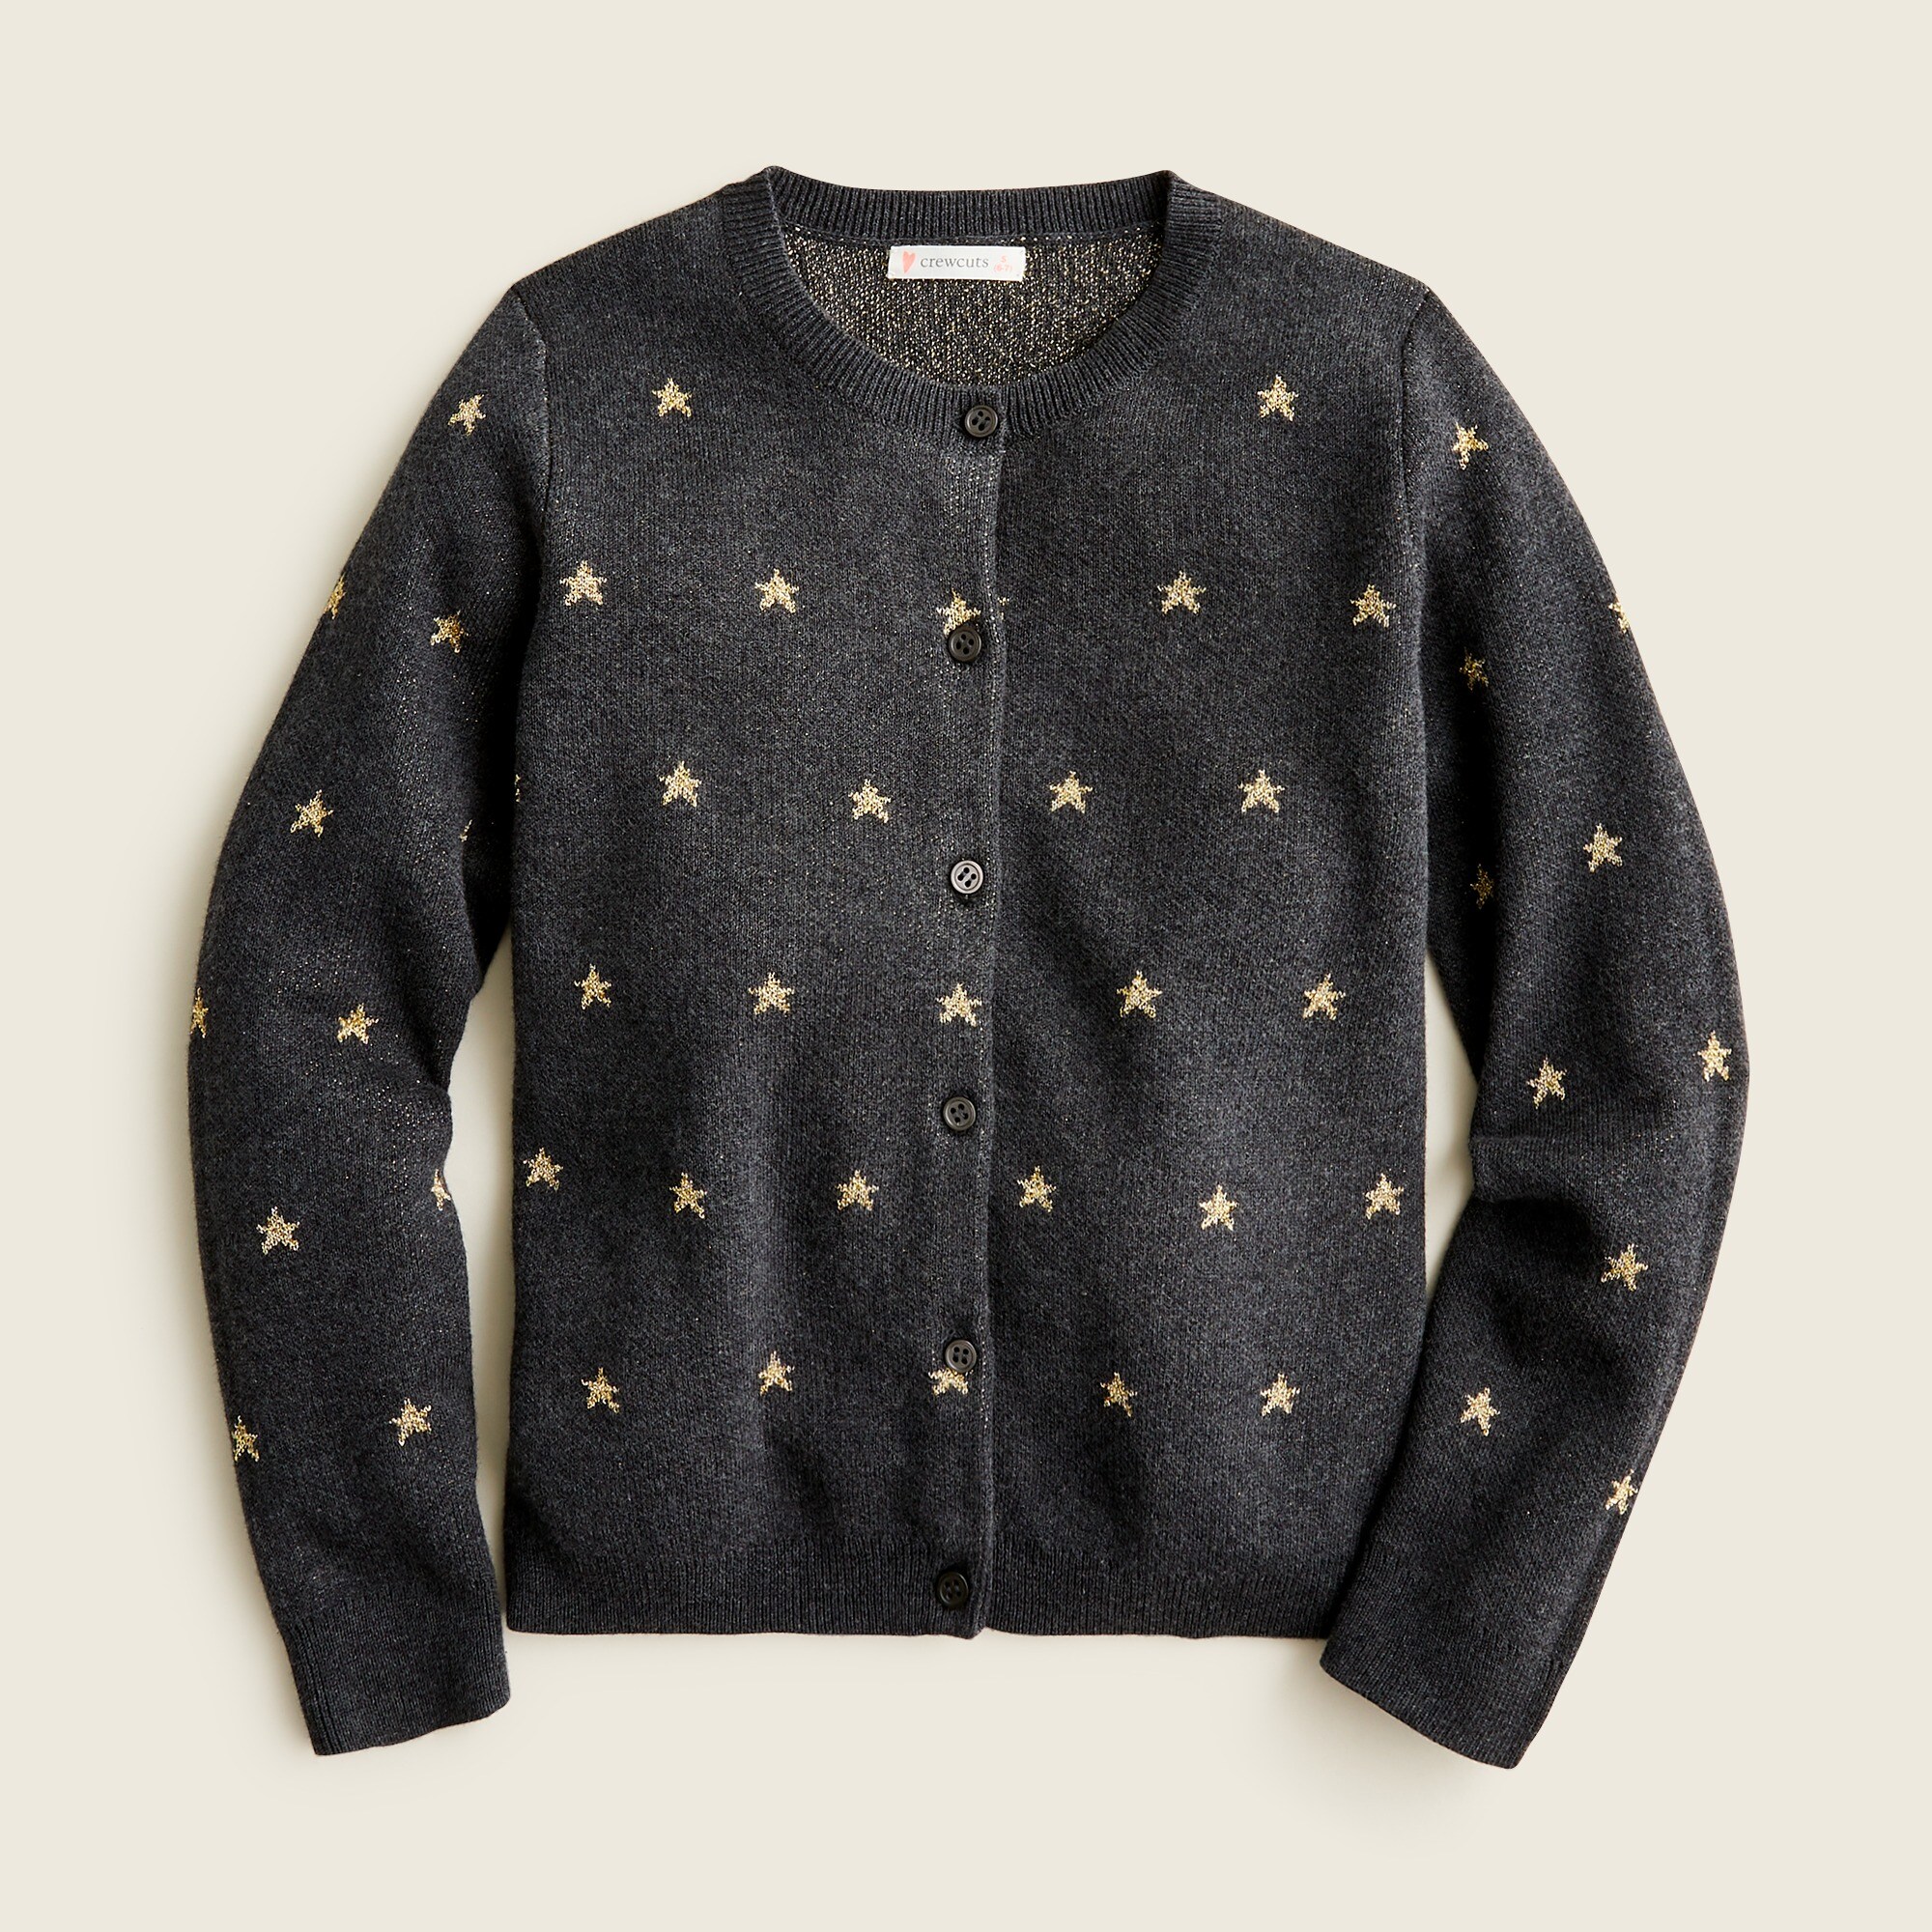 제이크루 걸즈 가디건 J.Crew Girls cardigan sweater with allover stars,CHARCL GOLD